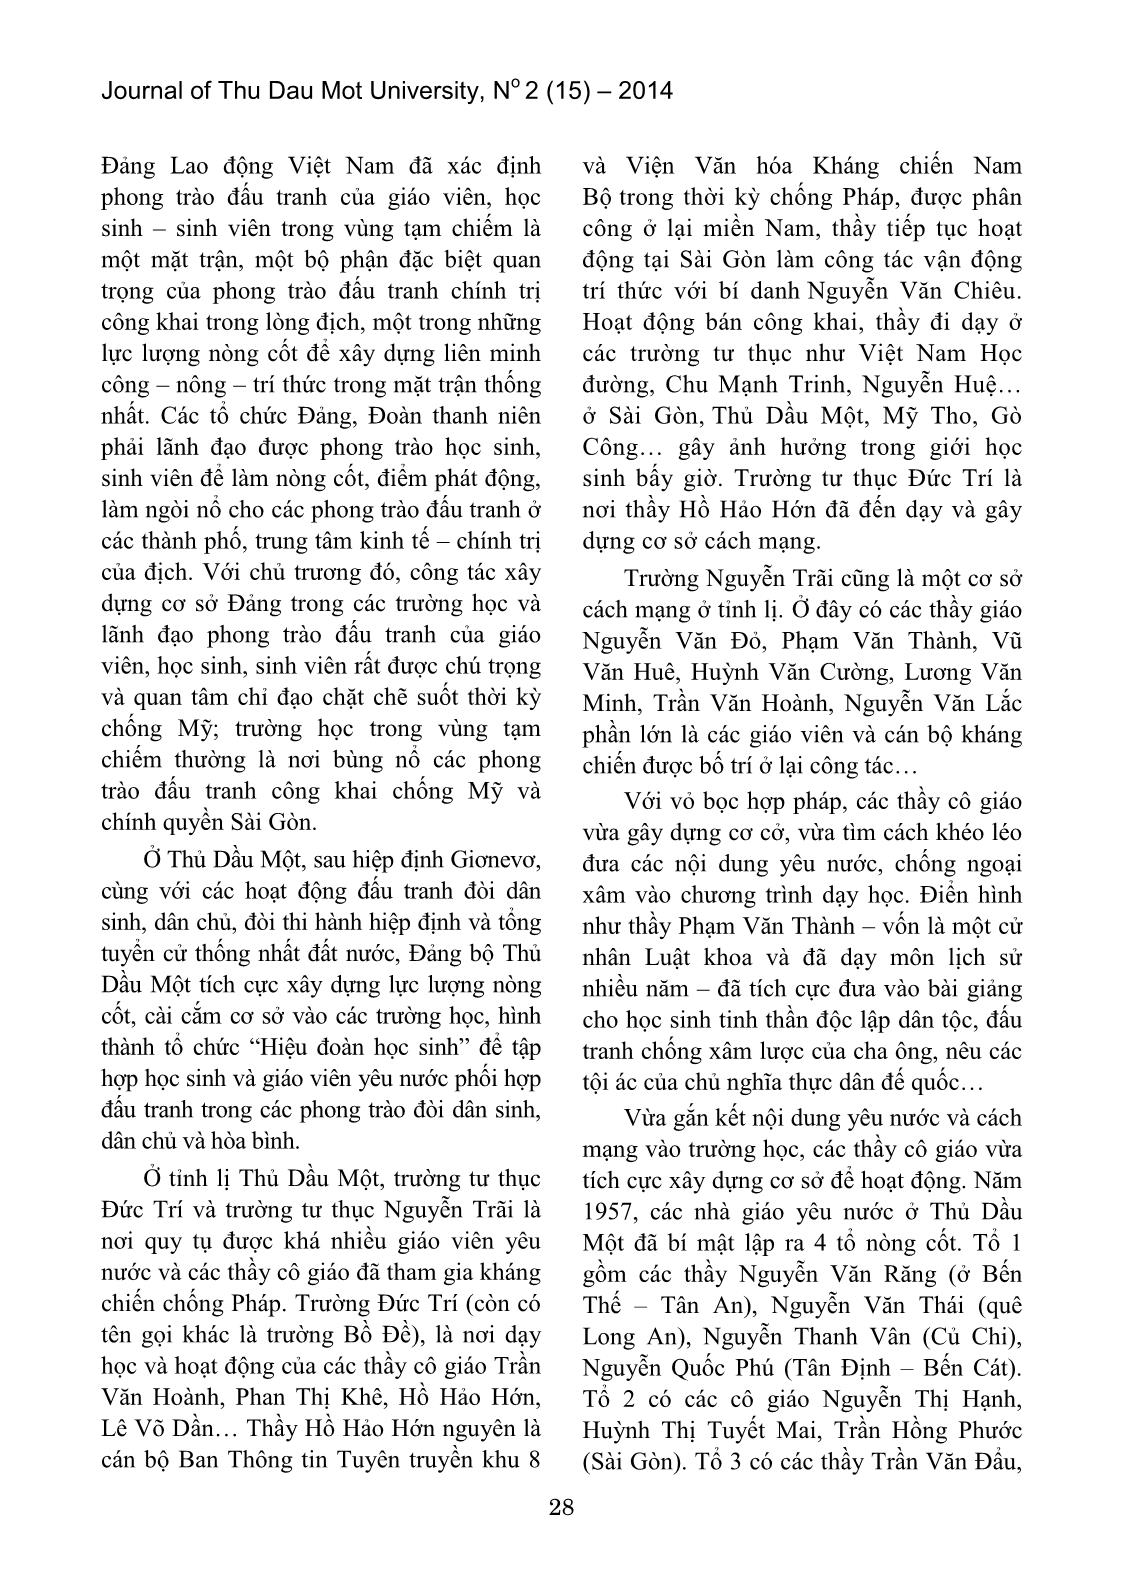 Hoạt động yêu nước của giáo viên và học sinh Thủ Dầu Một – Bình Dương trong vùng địch tạm chiếm (1954 – 1975) trang 2